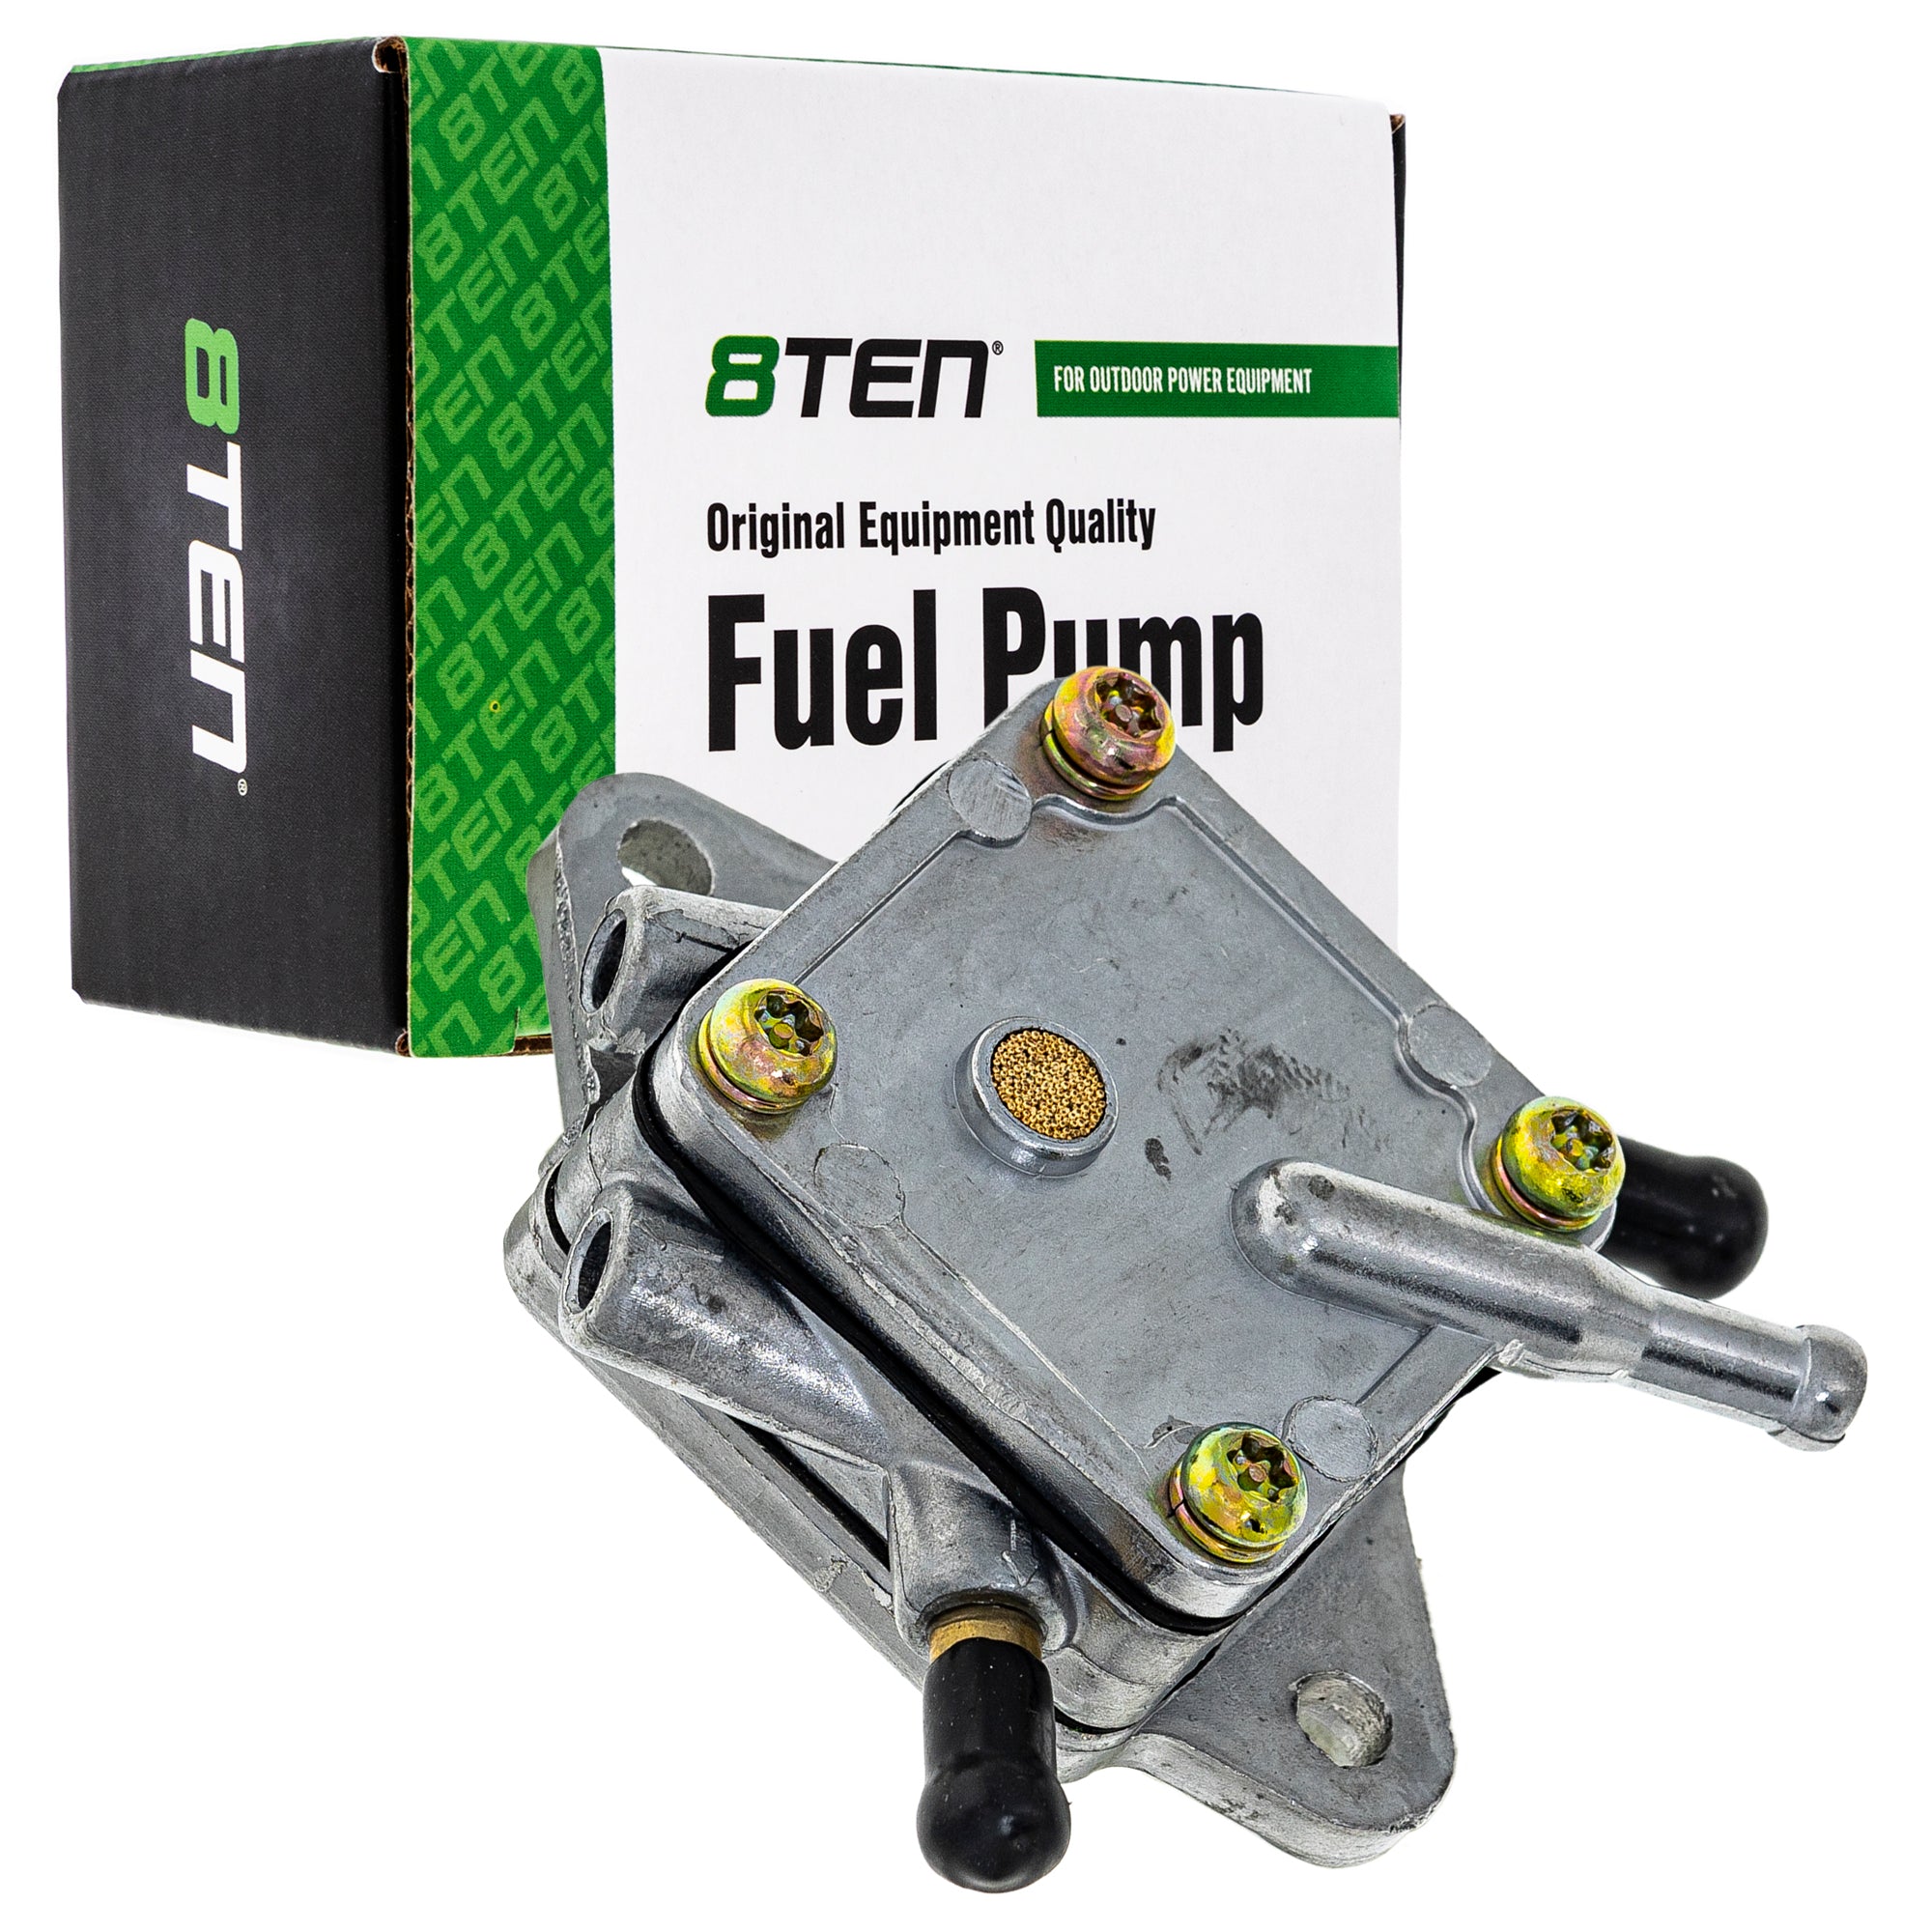 Fuel Pump Assembly for Honda 8TEN 810-CFP2247A